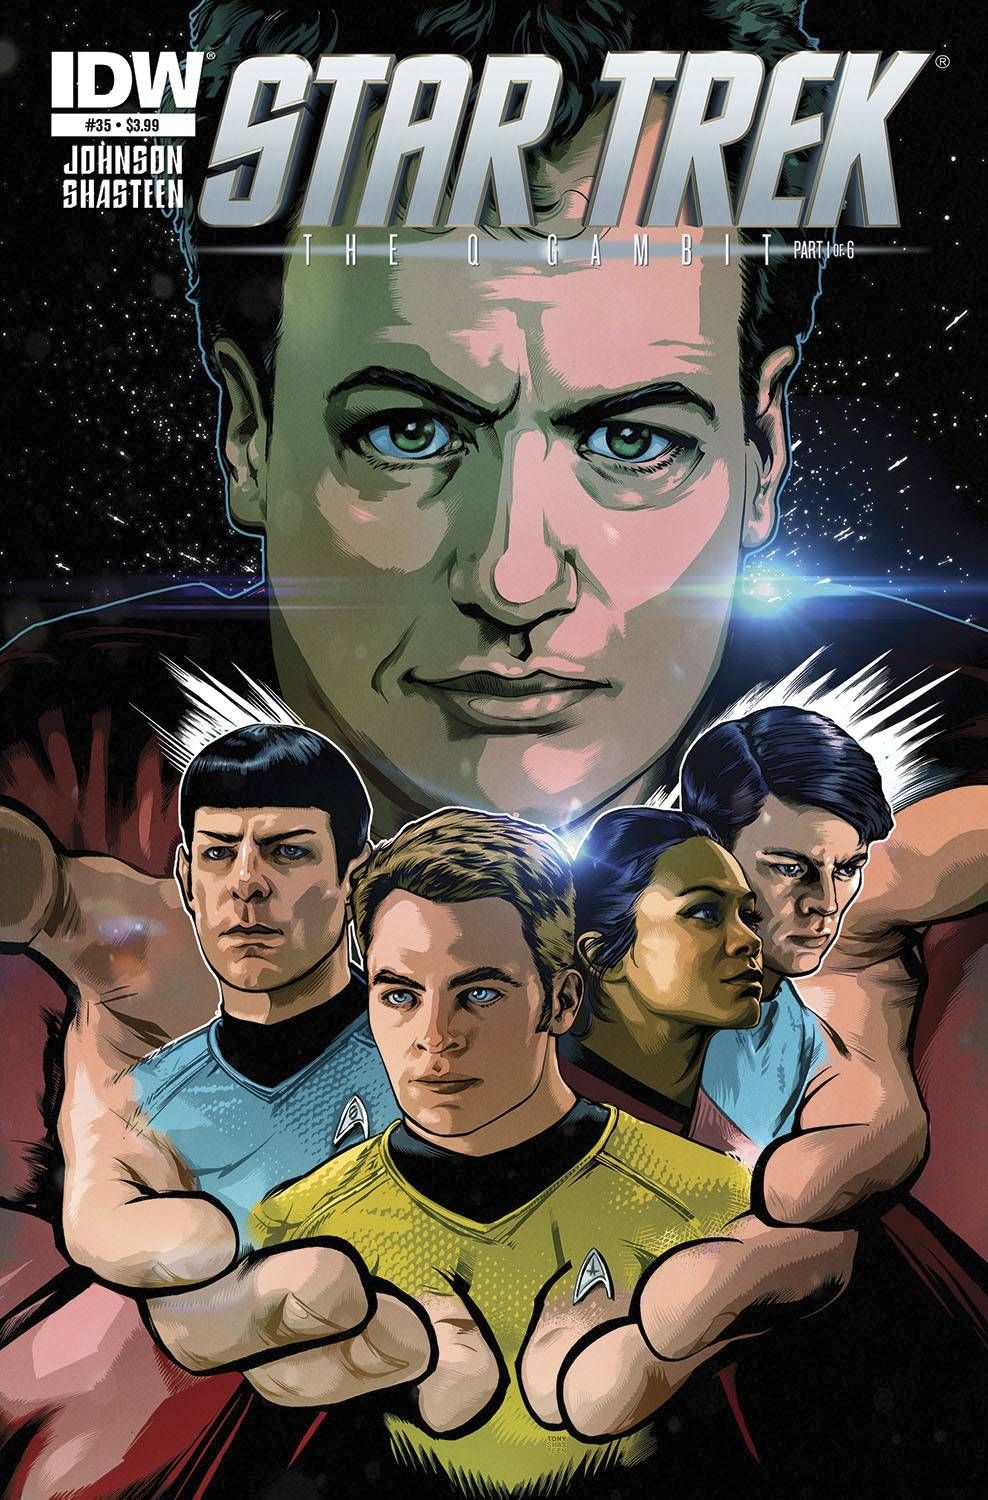 Star Trek #35 Comic